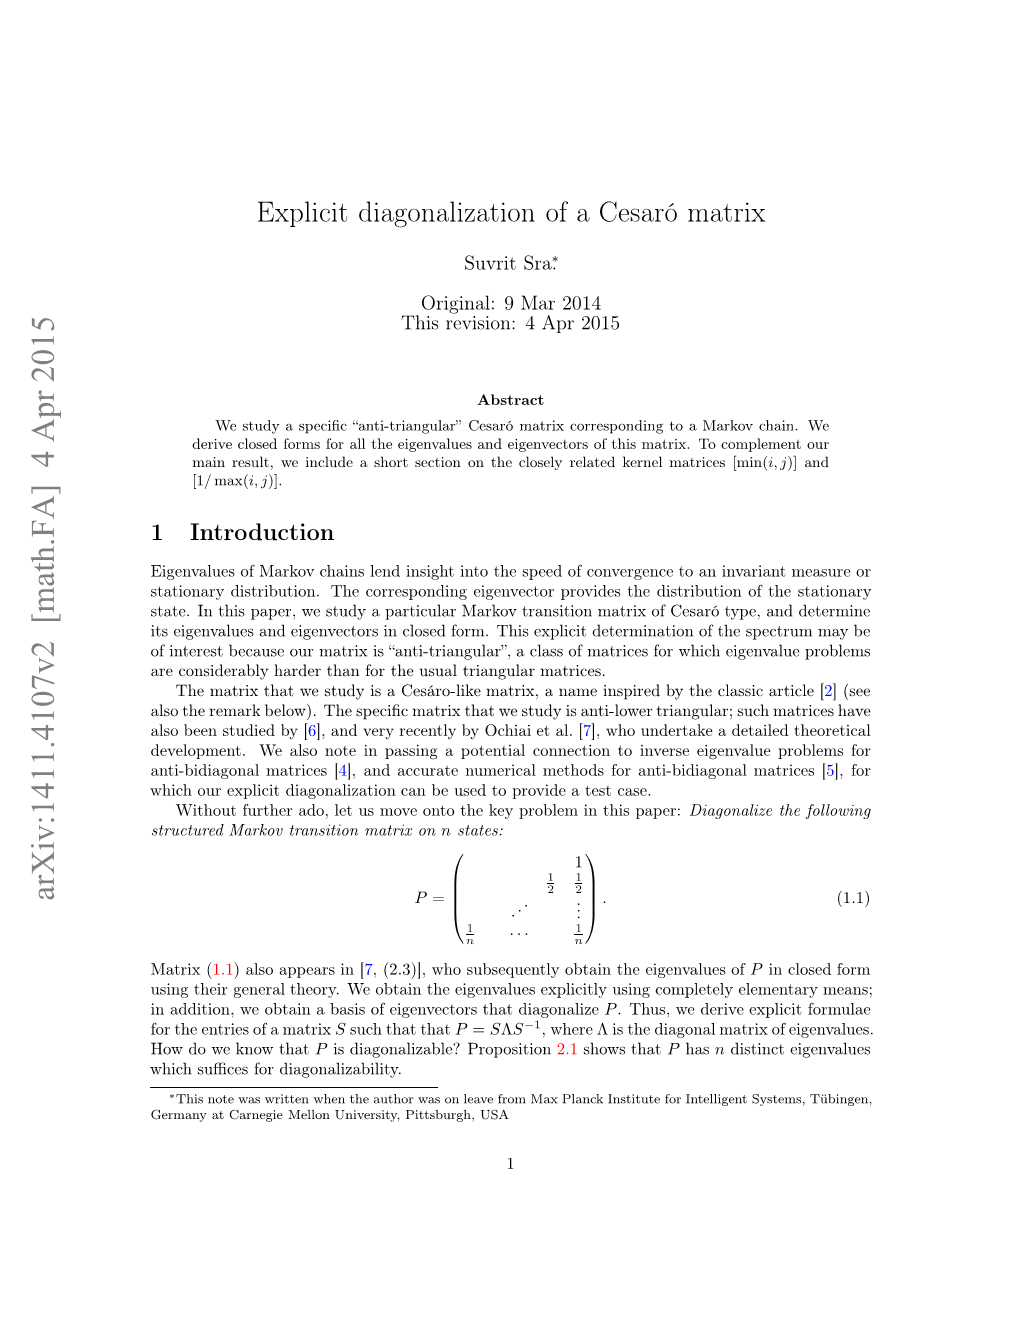 Explicit Diagonalization of an Anti-Triangular Cesar\'O Matrix